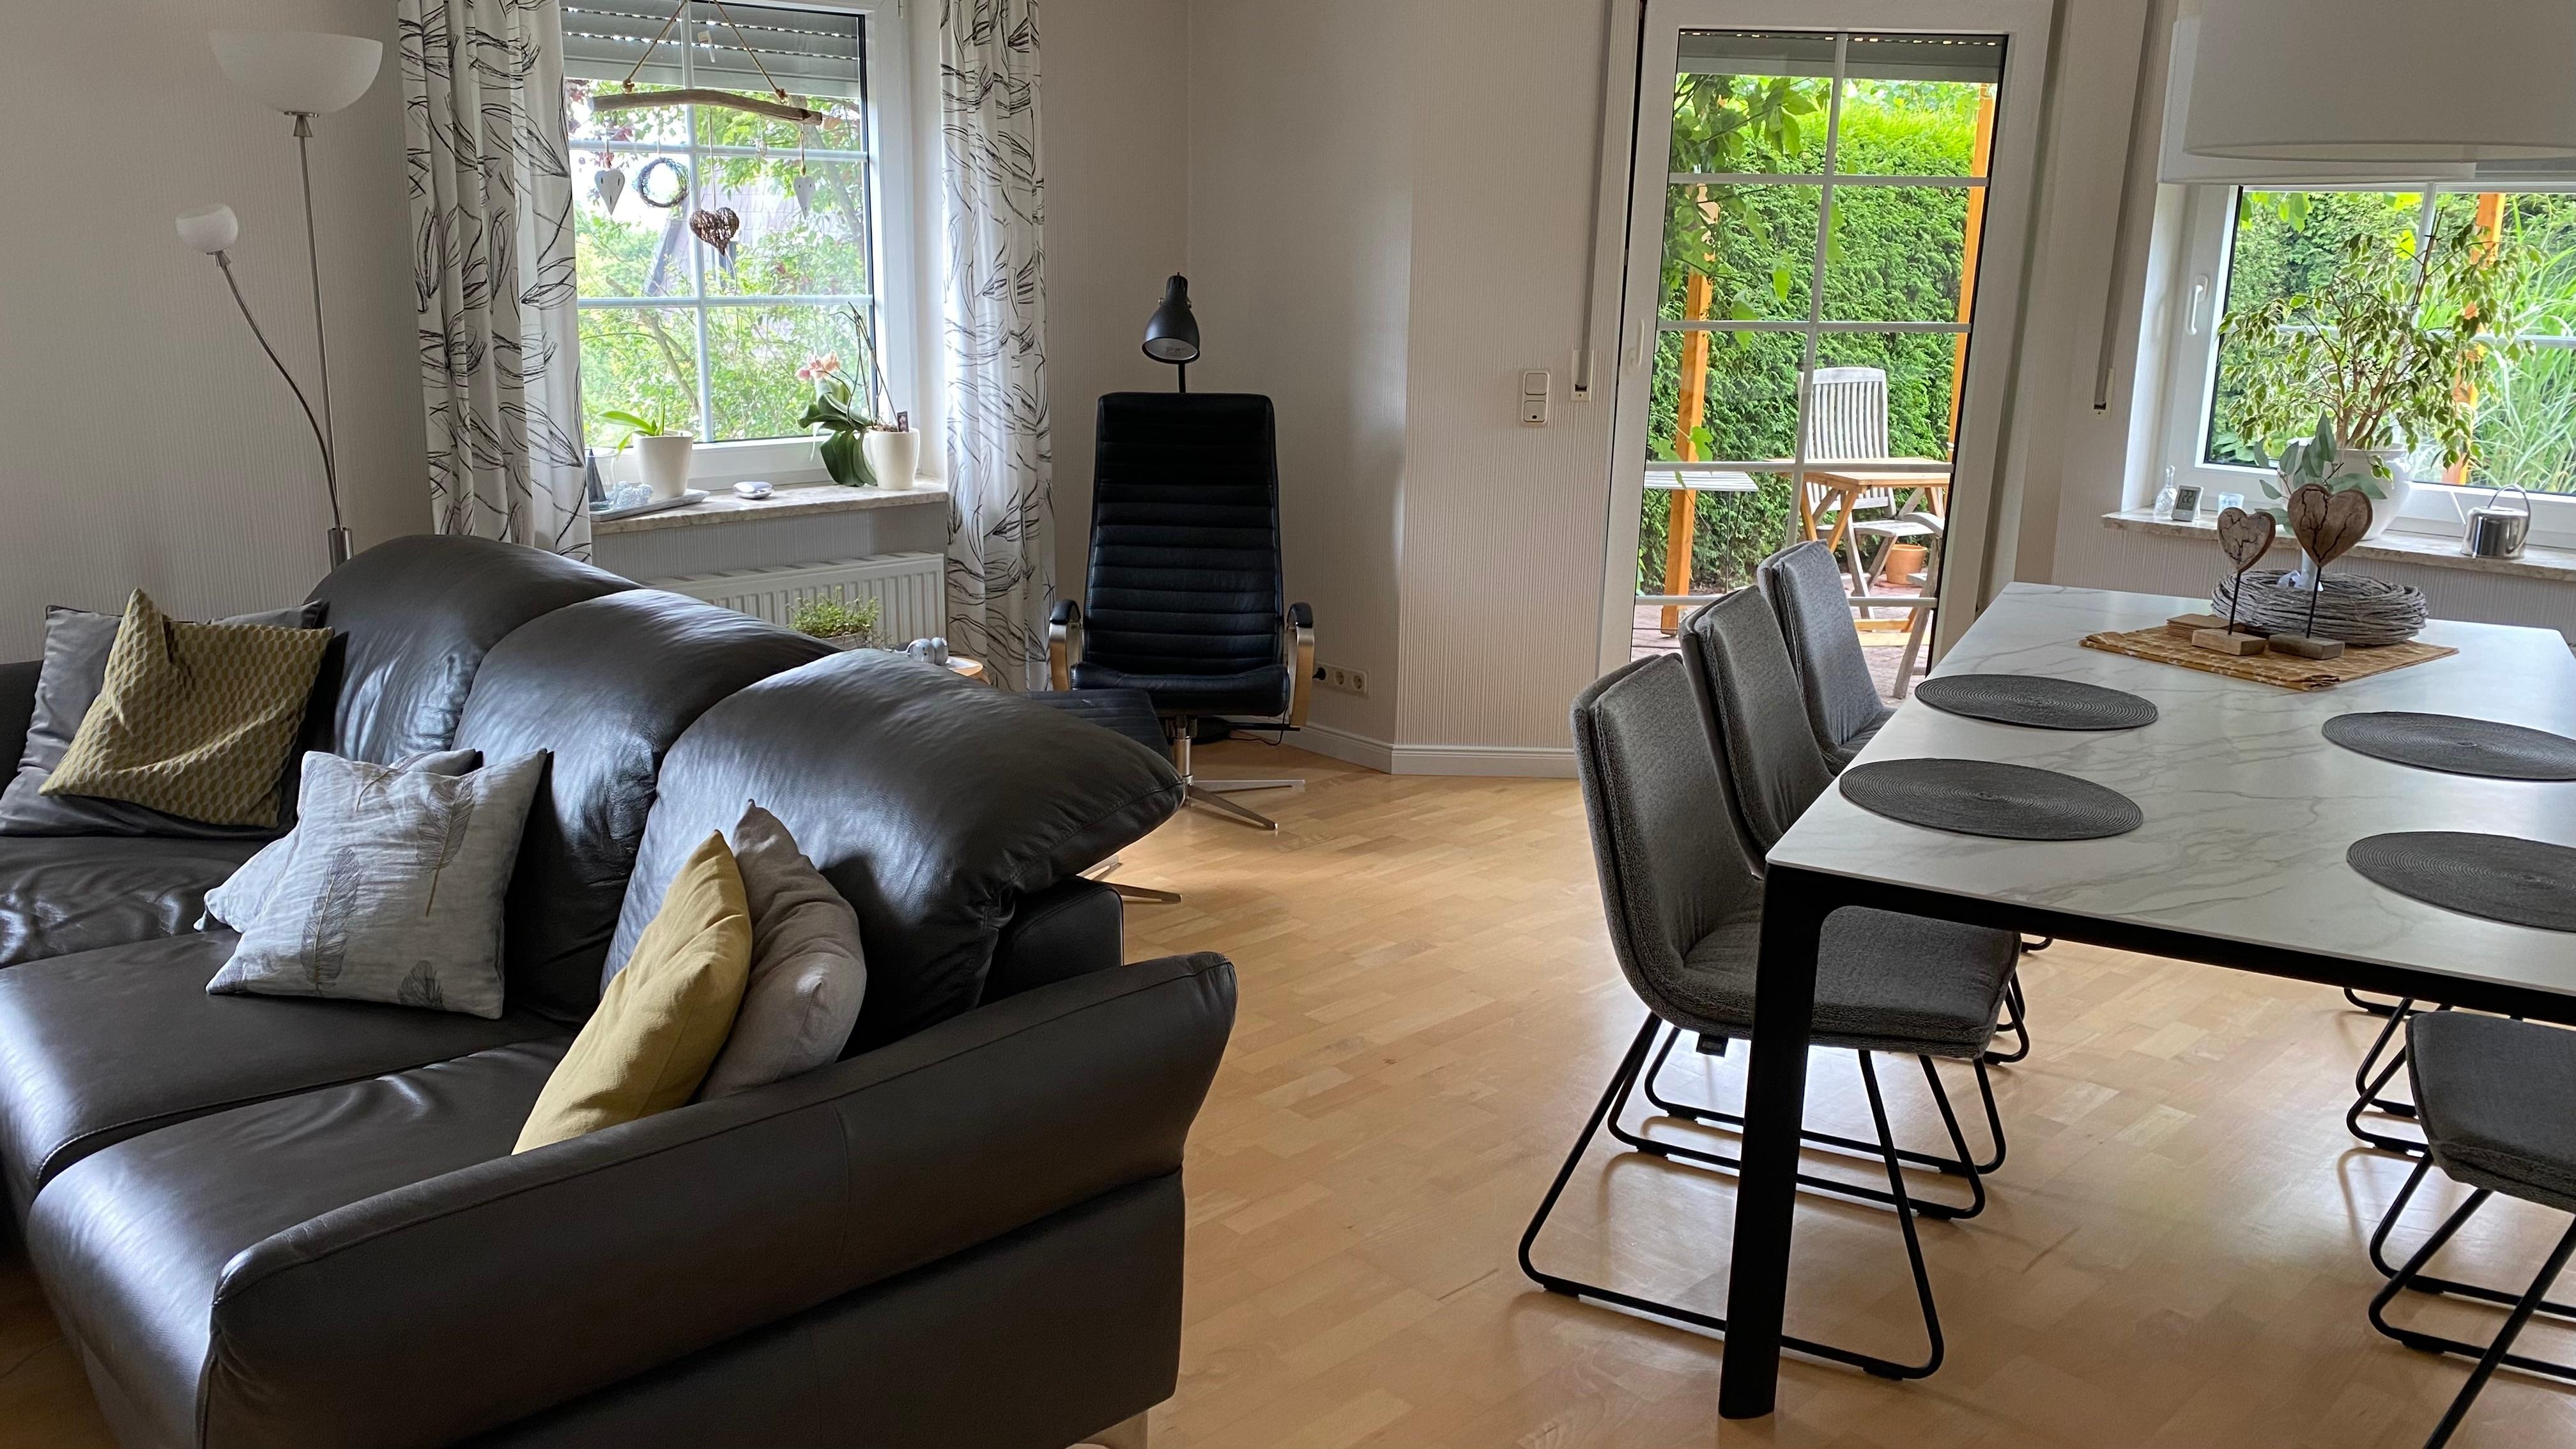 #wohnzimmerumstyling

Wie kann das Wohnzimmer durch einen Teppich besser gegliedert werden?